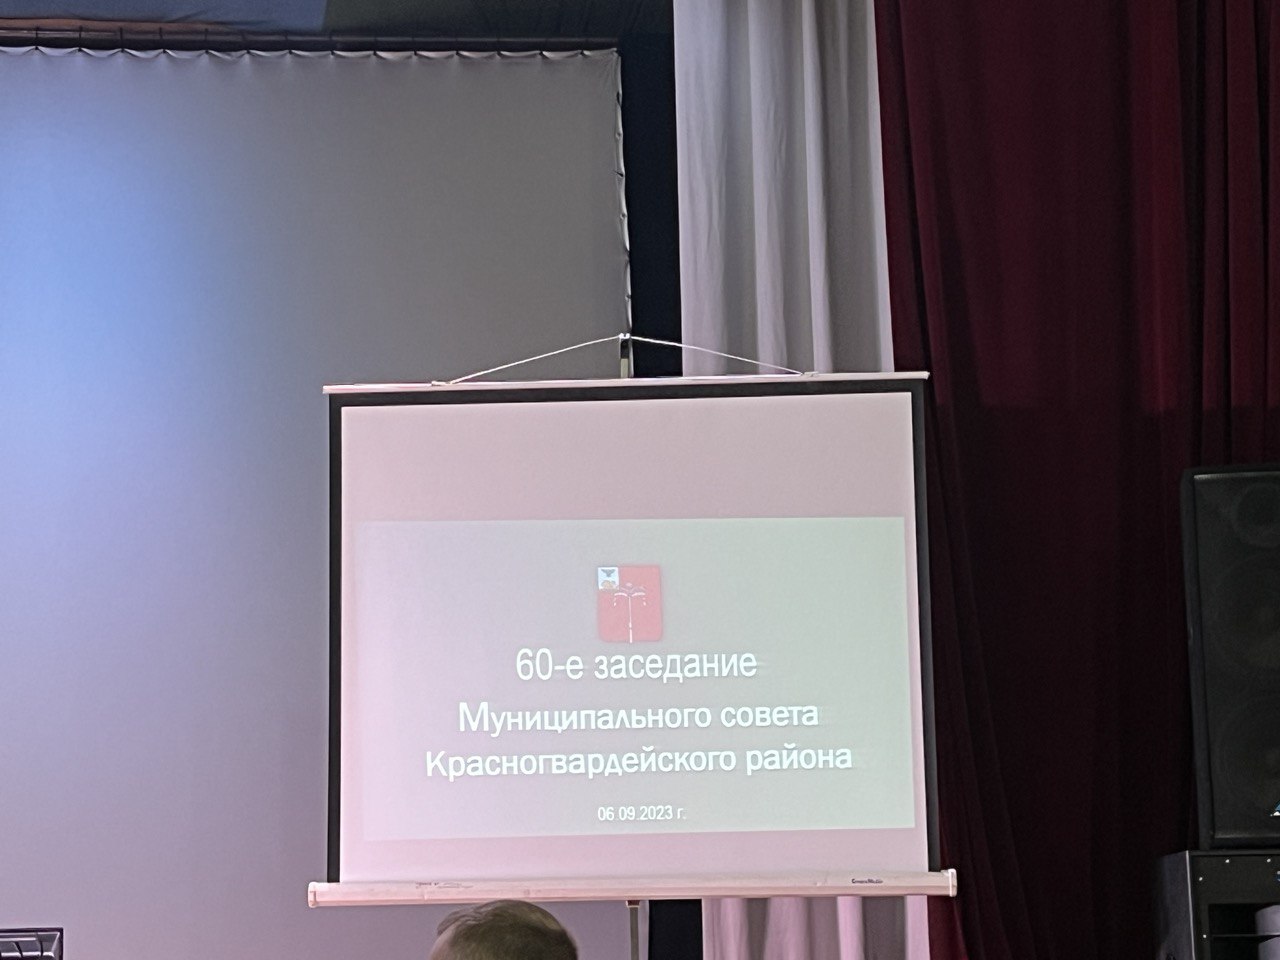 Исполнительный директор Ассоциации приняла участие в 60-ом заседании Муниципального совета Красногвардейского района.